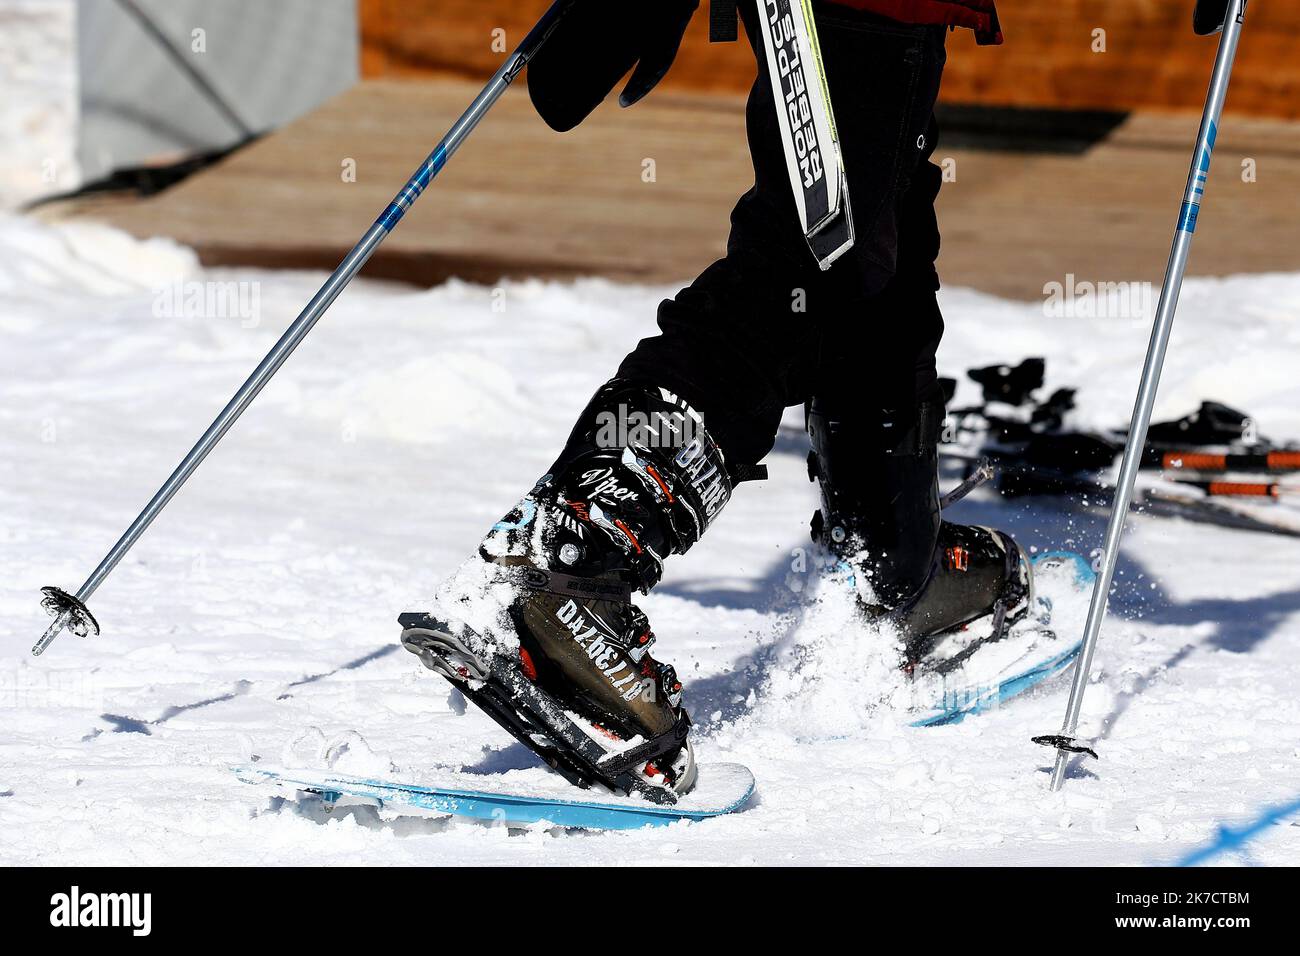 ©PHOTOPQR/VOIX DU NORD/Ludovic Maillard ; 22/02/2021 ; Courchevel le 17.02.2021, Courchevel est une station de sports d hiver de la vallee de la Tarentaise situee dans la commune de Courchevel, dans le departement de la Savoie, sans remontees mecaniques , courchevel s adapte, ski de fond, raquettes, luges chiens de traineaux etc . LA VOIX DU NORD / PHOTO LUDOVIC MAILLARD - Courcheve French Alps ski resort. It is a part of Les Trois Vallées, the largest linked ski areas in the world. There is no shortage of activities in the resort even in times of Covid  Stock Photo